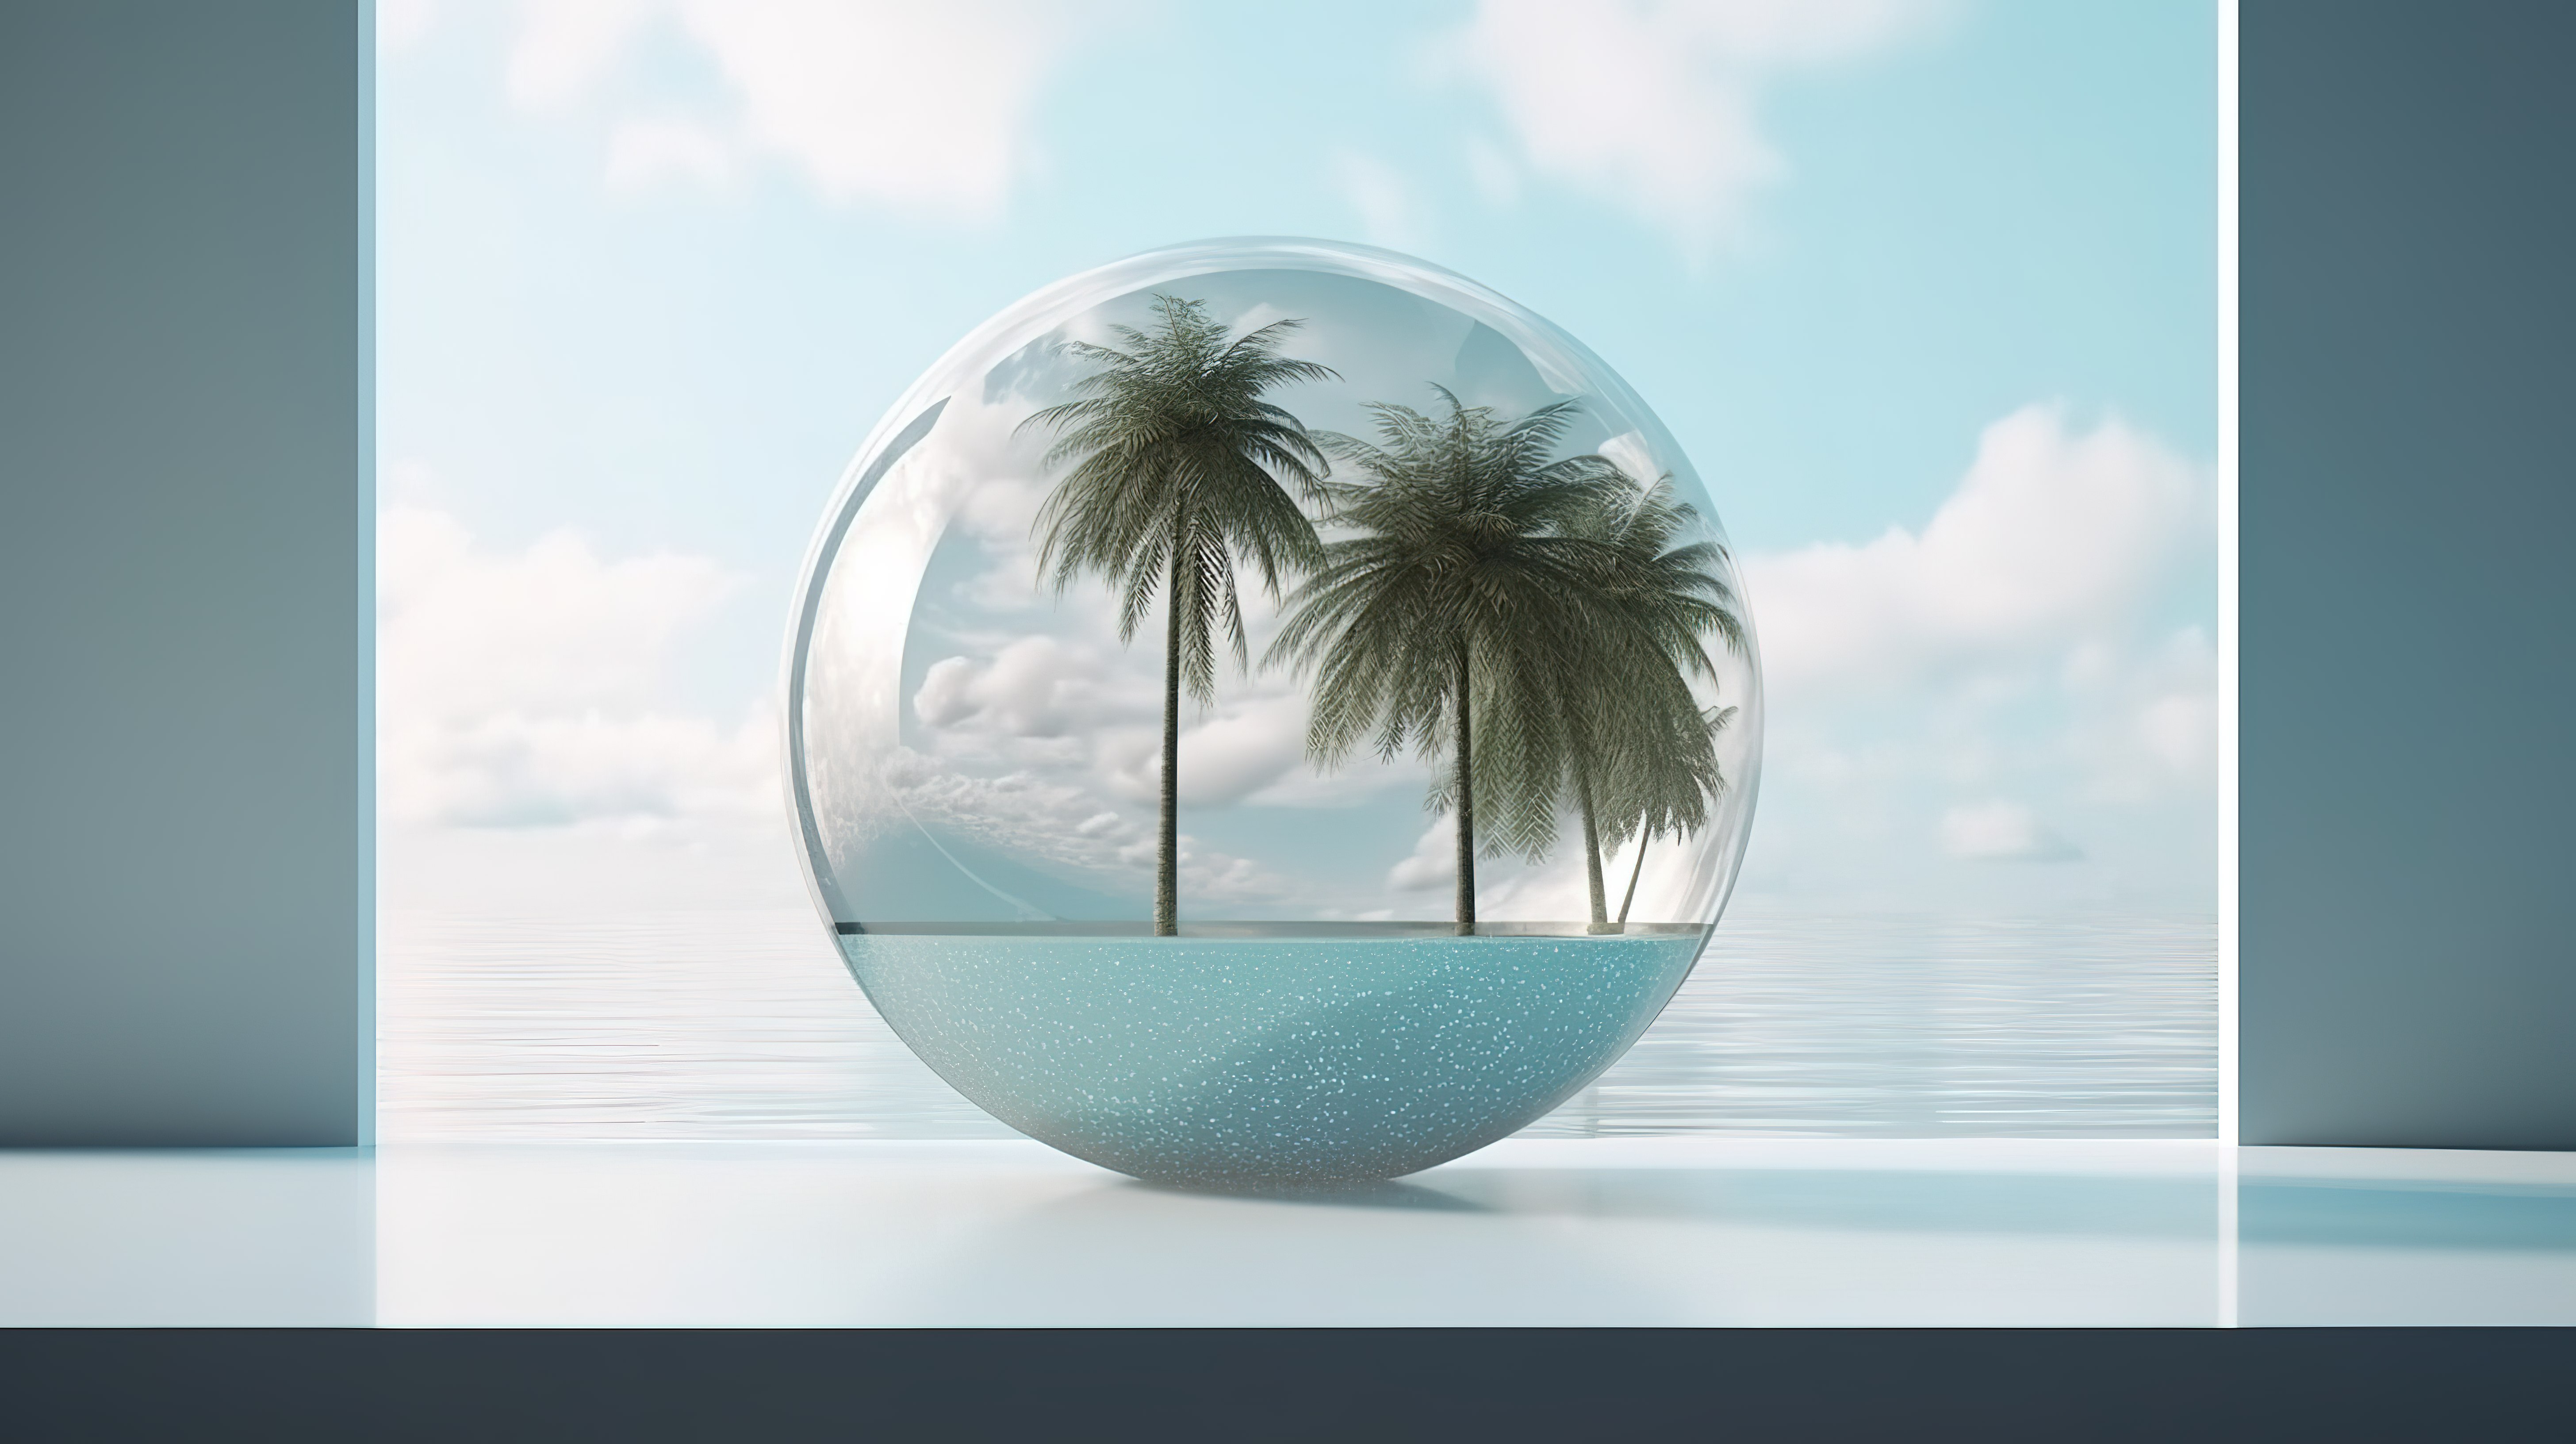 3D 渲染场景中的陶瓷球背景和玻璃墙滨水平台图片